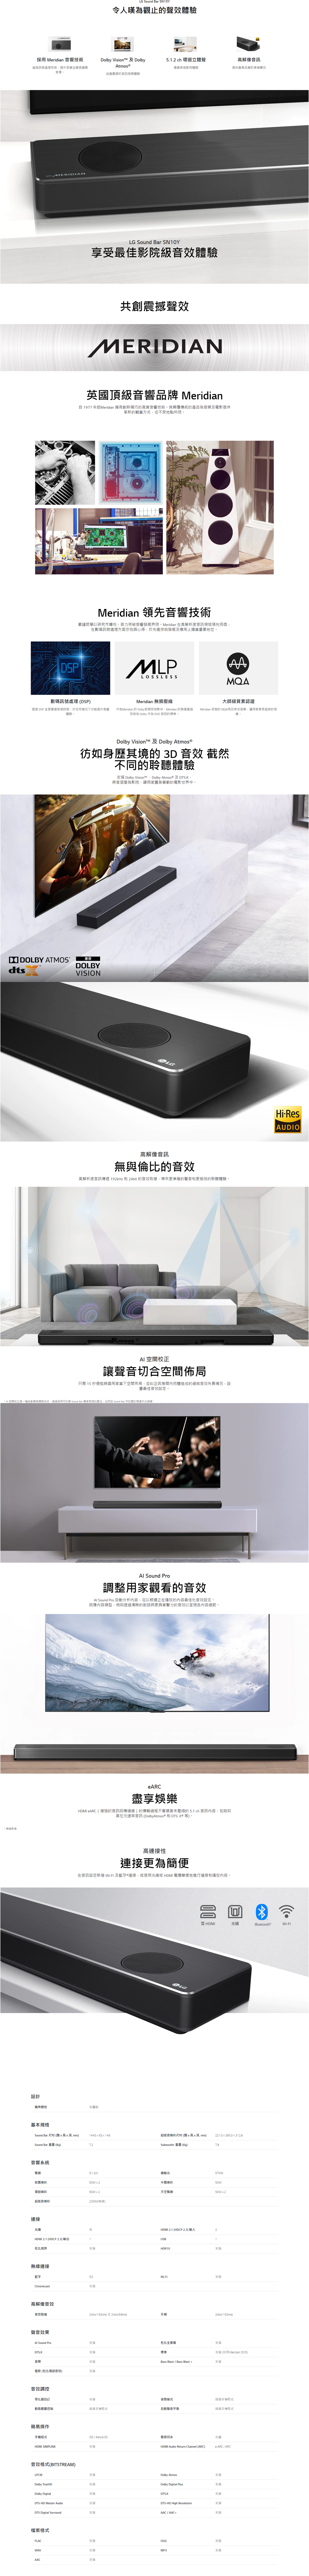 LG SN10Y Sound Bar (Gift) (For more details of registration methods and details, please visit https://www.lg.com/hk_en/support/promotion-gift)